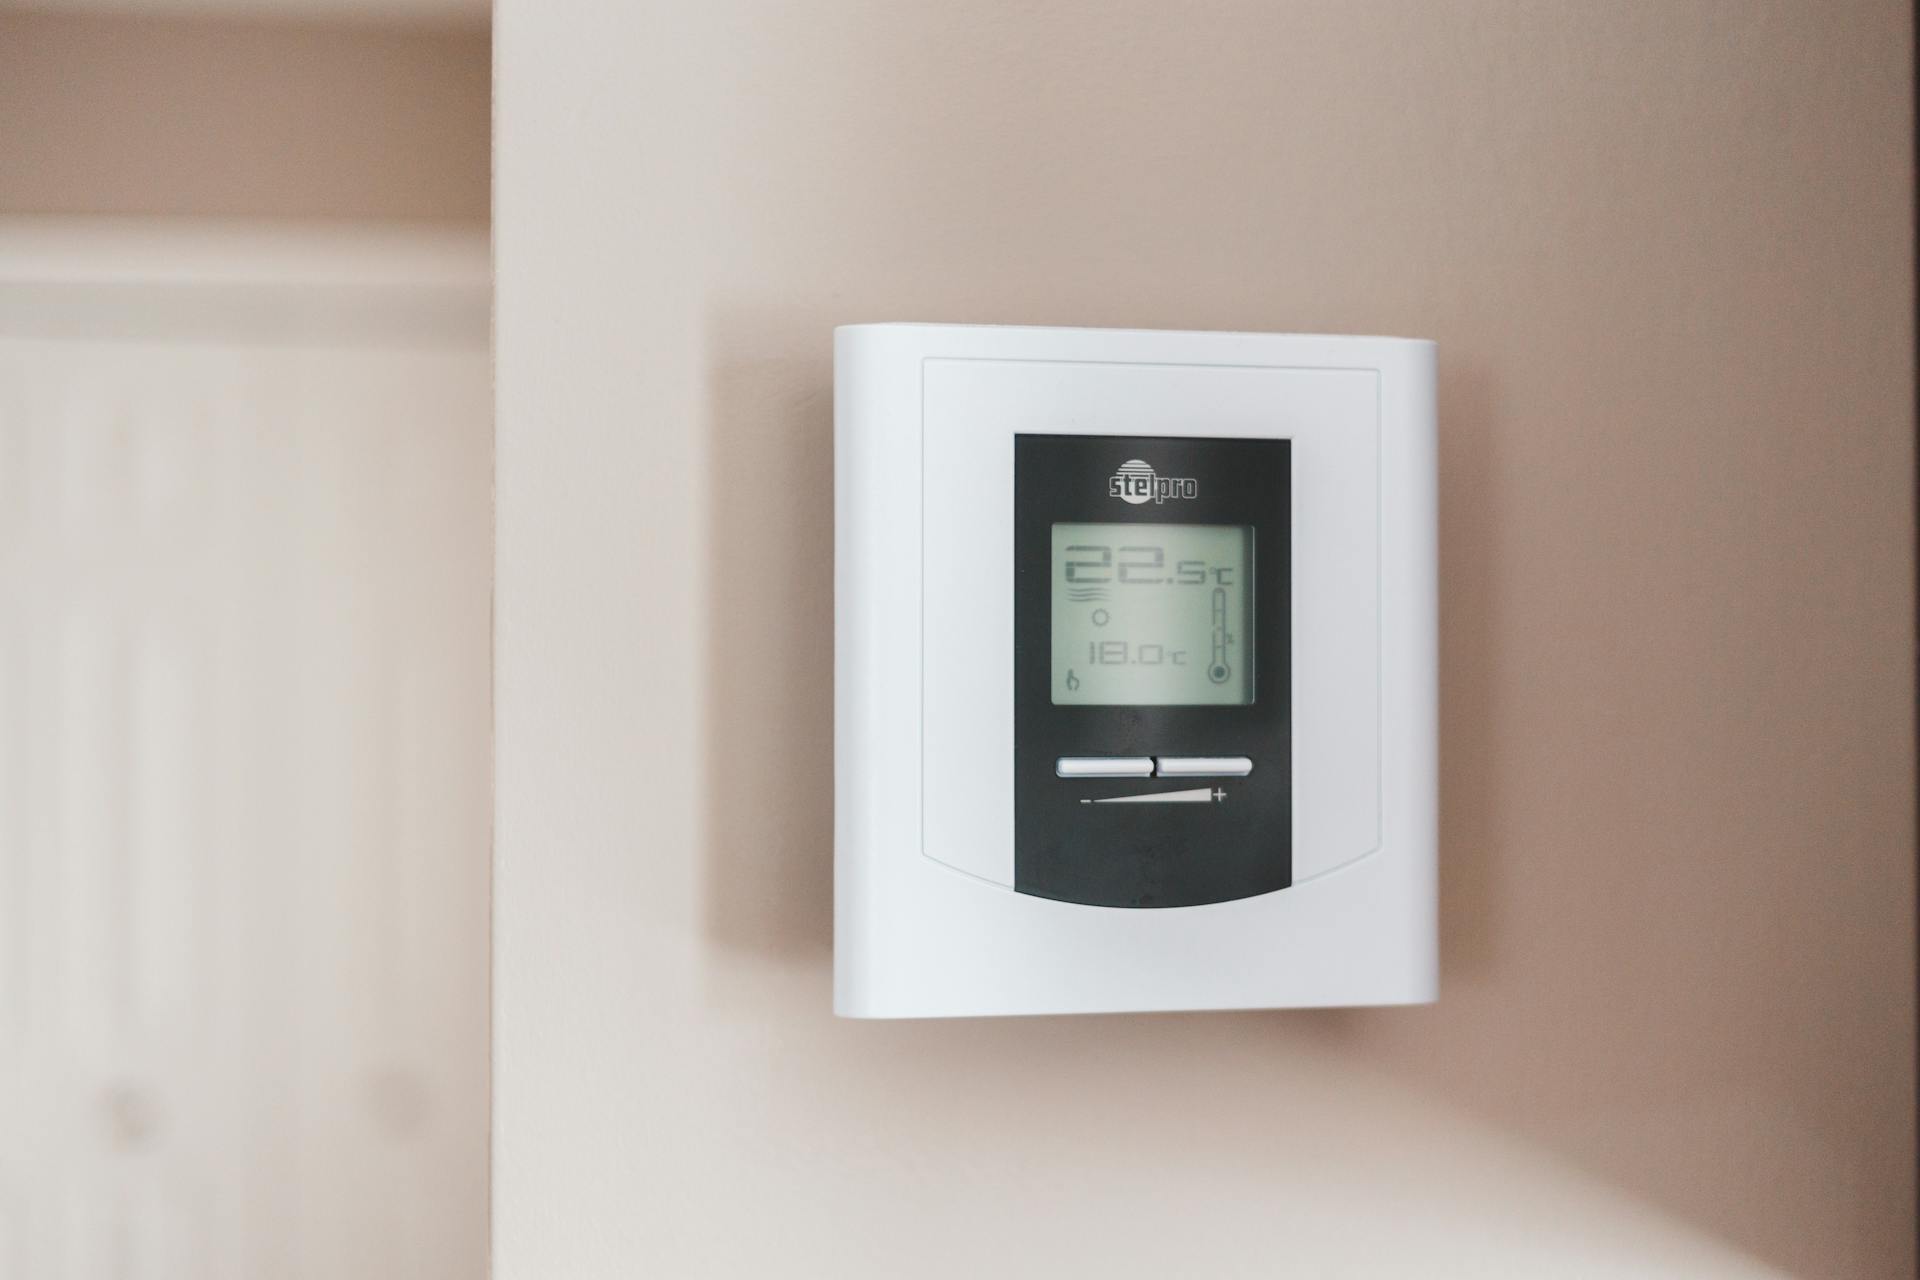 Un thermostat sur le mur | Source : Pexels